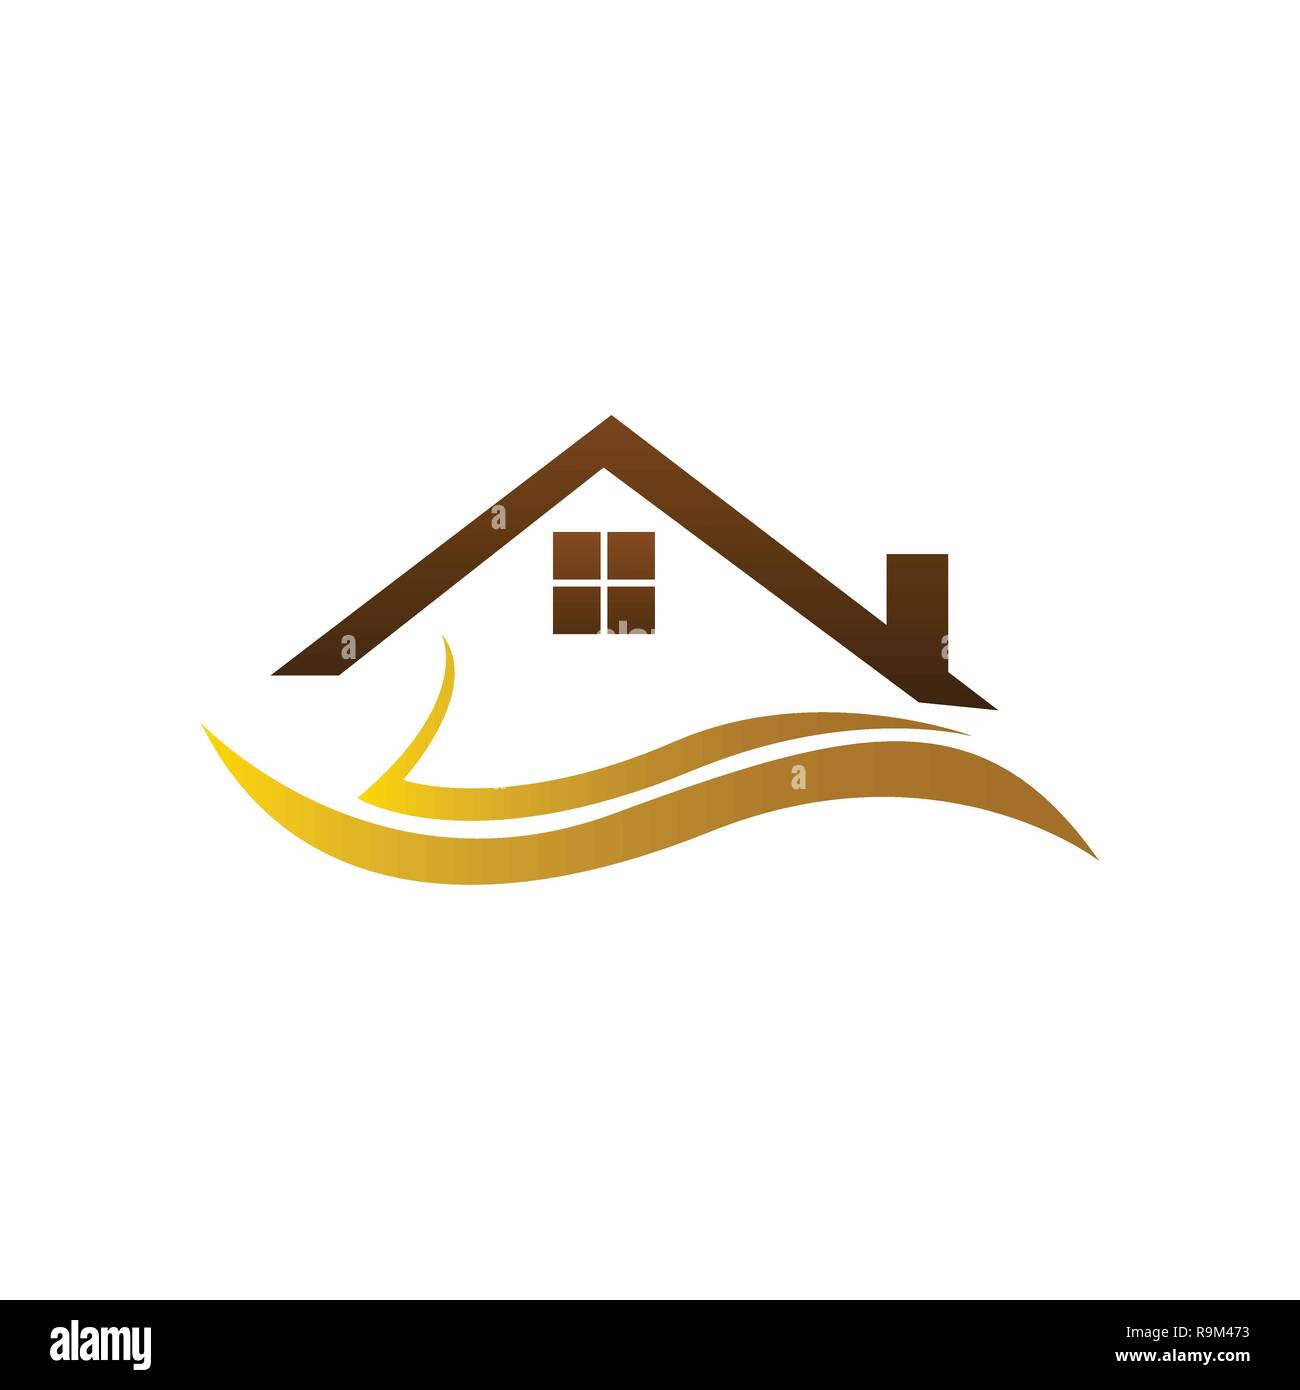 Real estate logo, home logo, house logo, simple design, vector ...